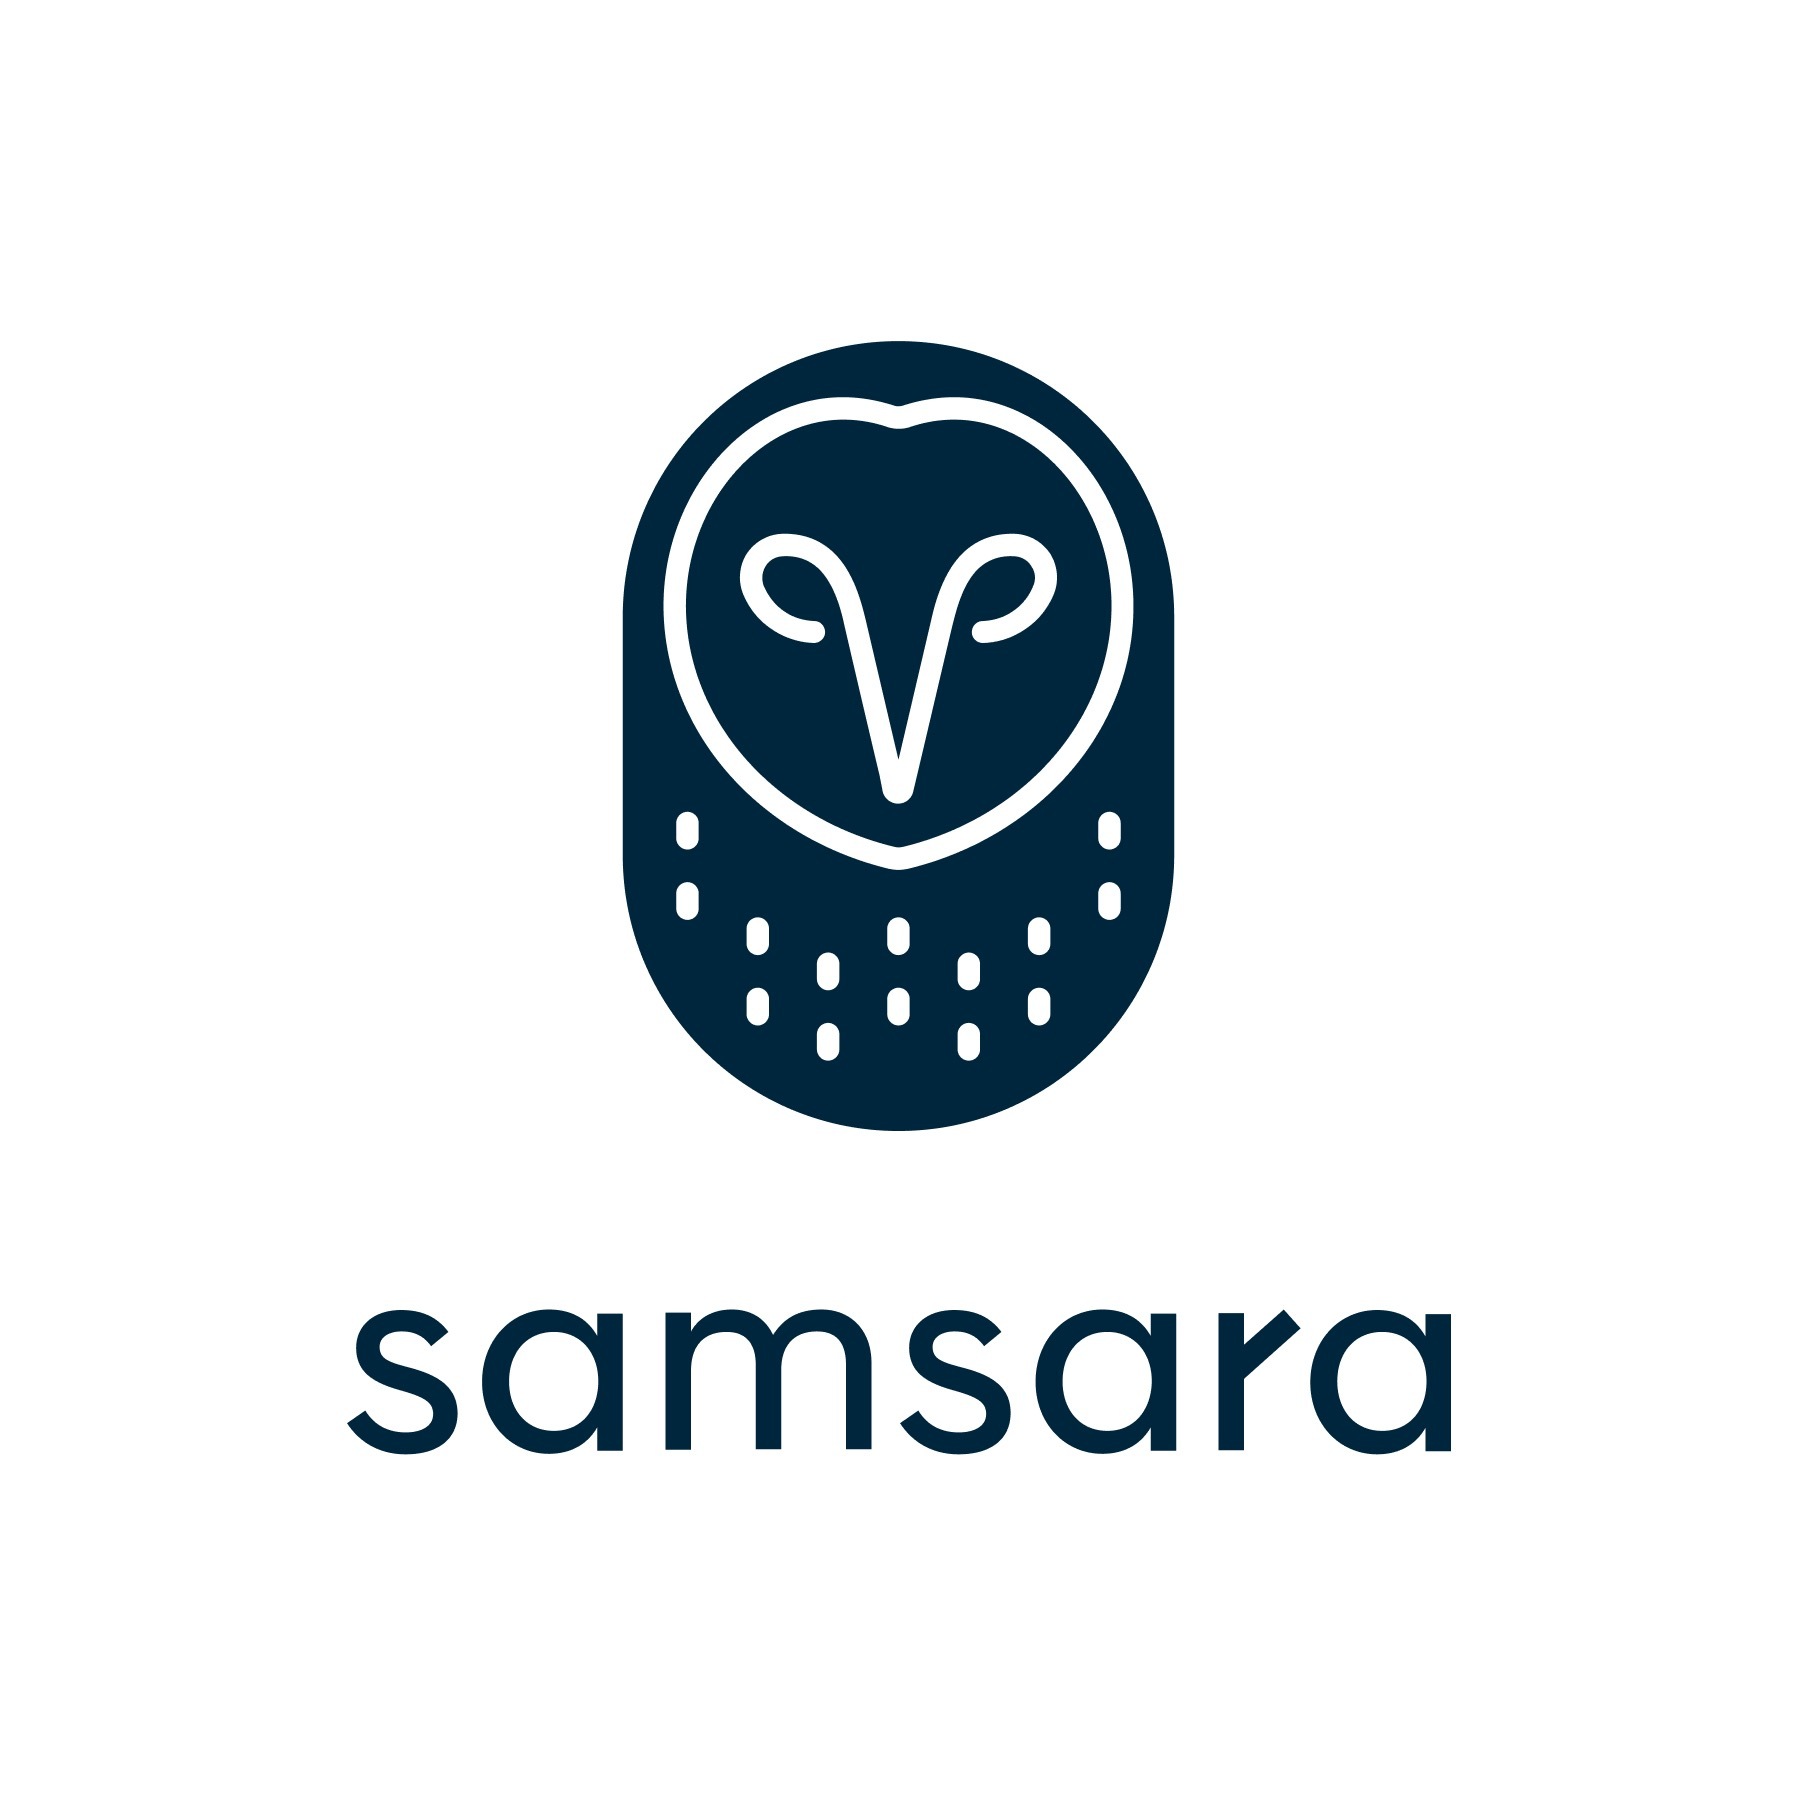 https://www.sec.gov/Archives/edgar/data/1642896/000164289623000067/samsara_logo.jpg